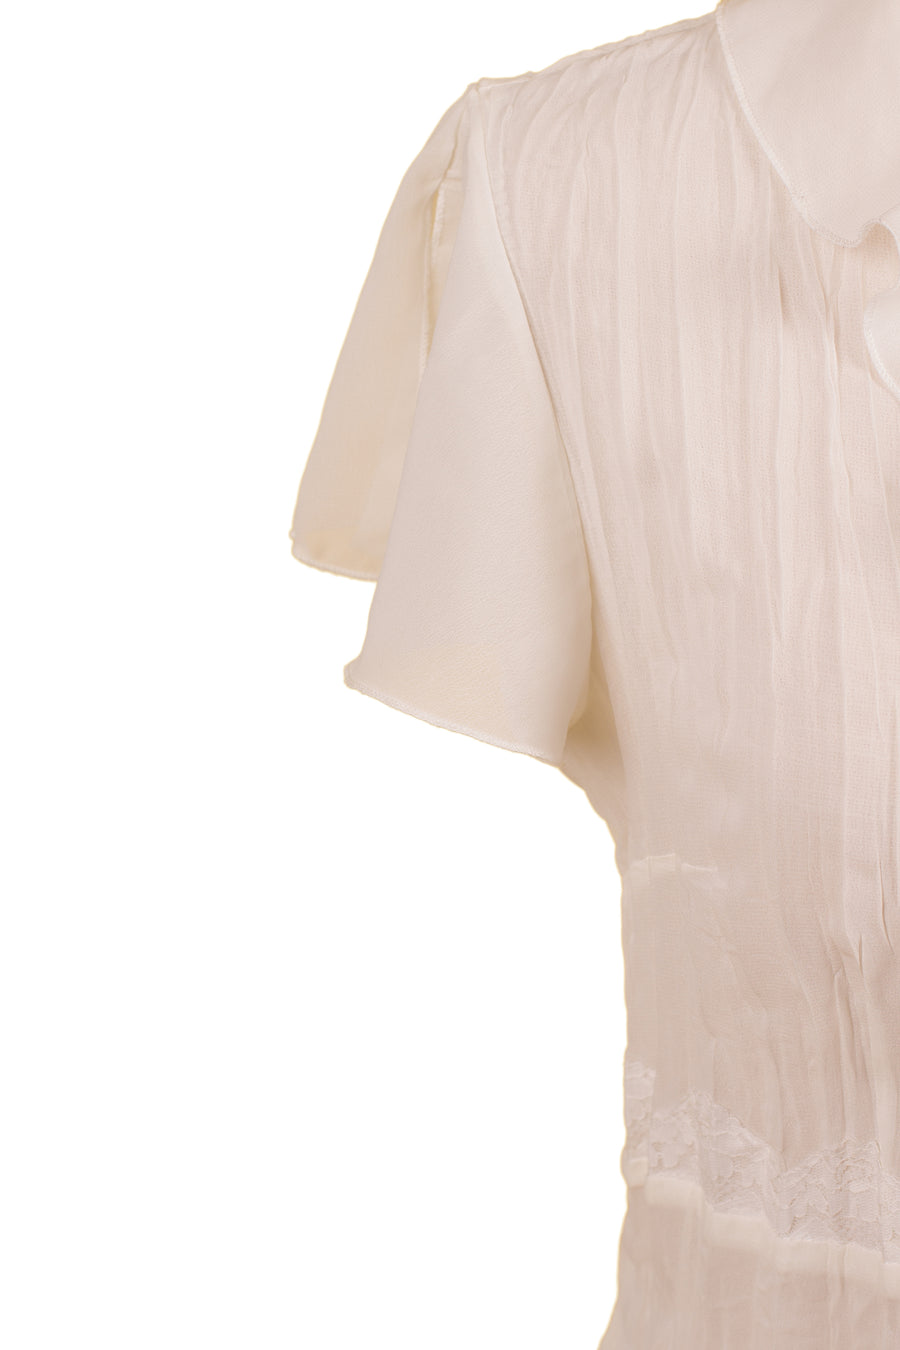 Vintage White Sleeveless Blouse | S